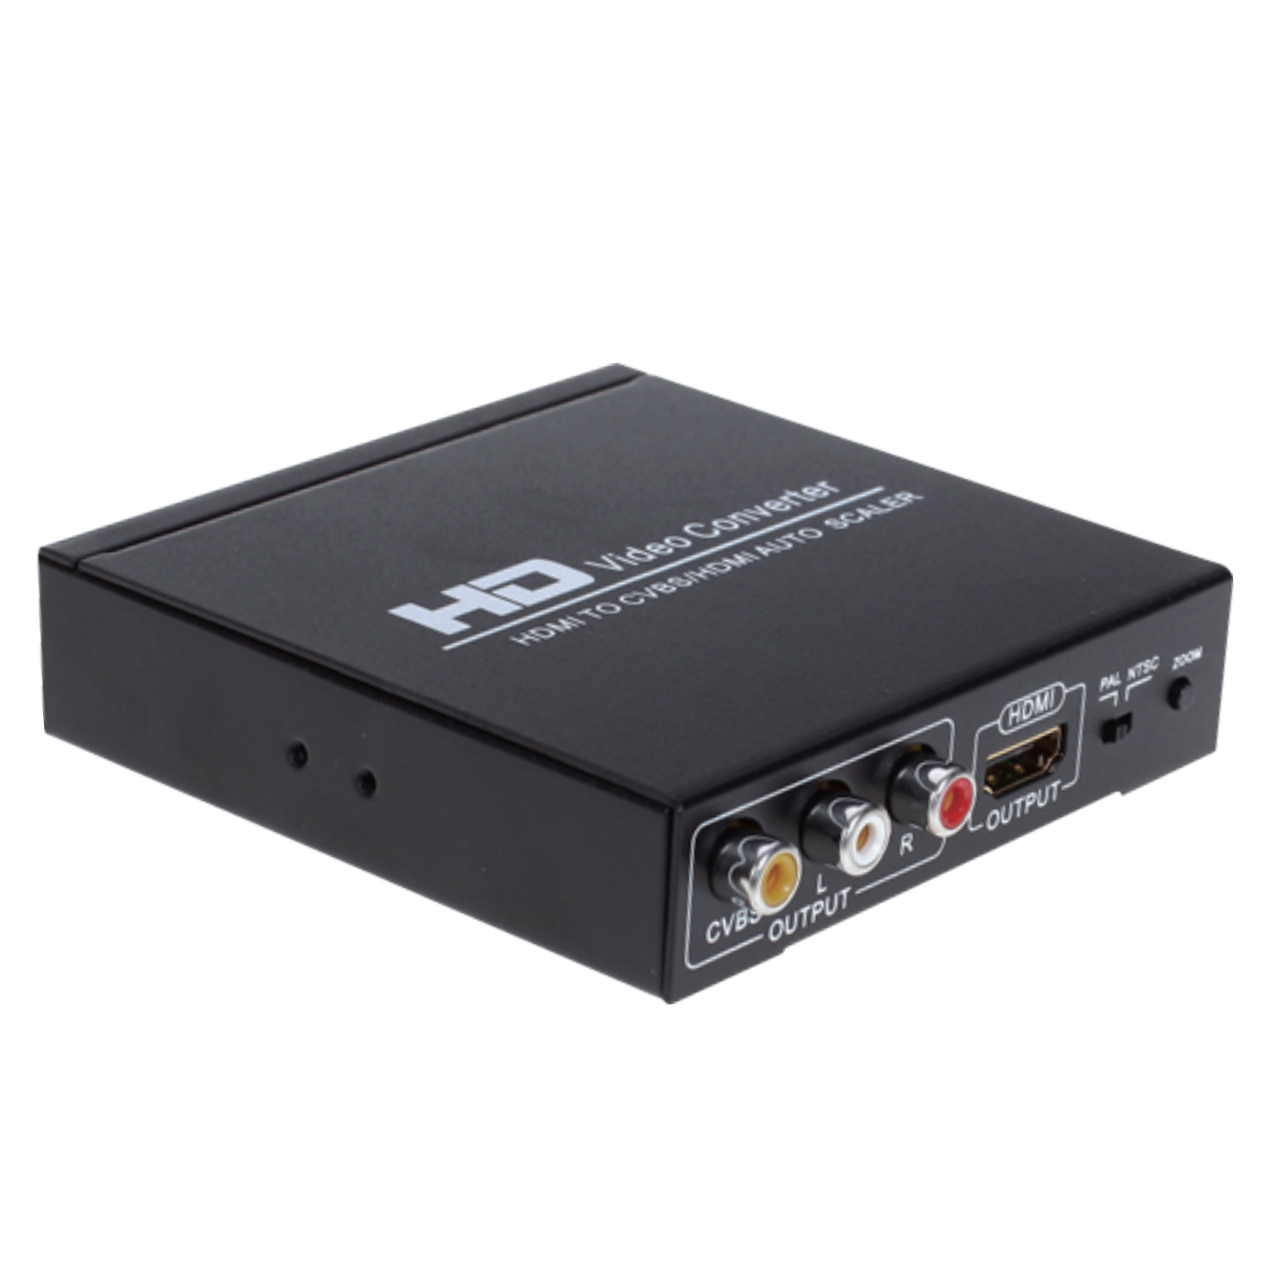 Конвертер HDMI -> CVBS + HDMI, для подключения к аналоговым ТВ, серия Greenline, 1080P, PAL/NTSC, AV RCA тюльпаны